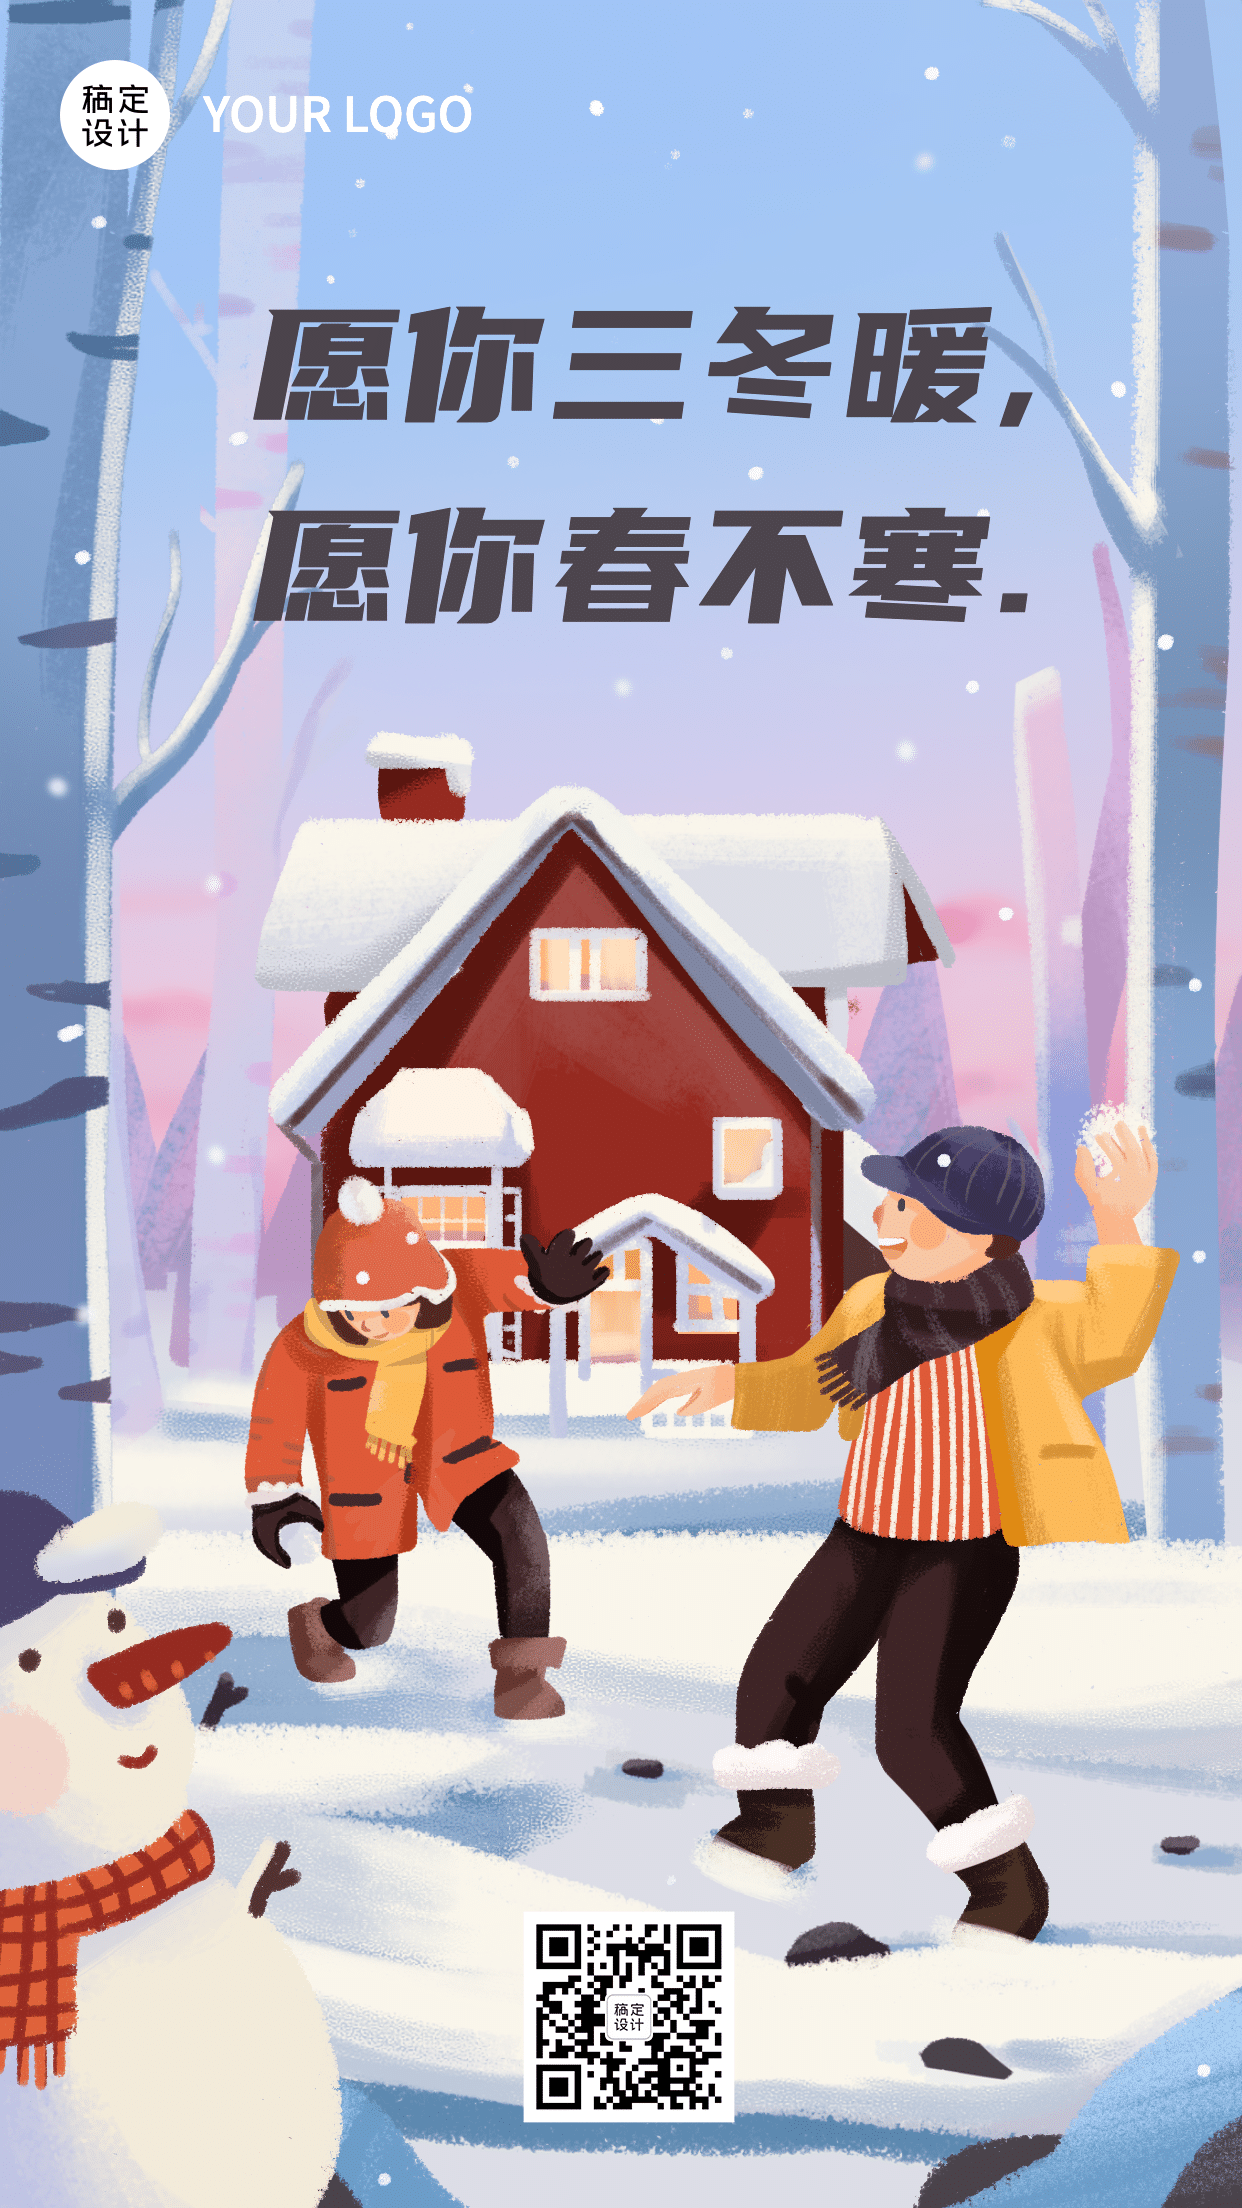 立冬节气户外雪景插画祝福手机海报